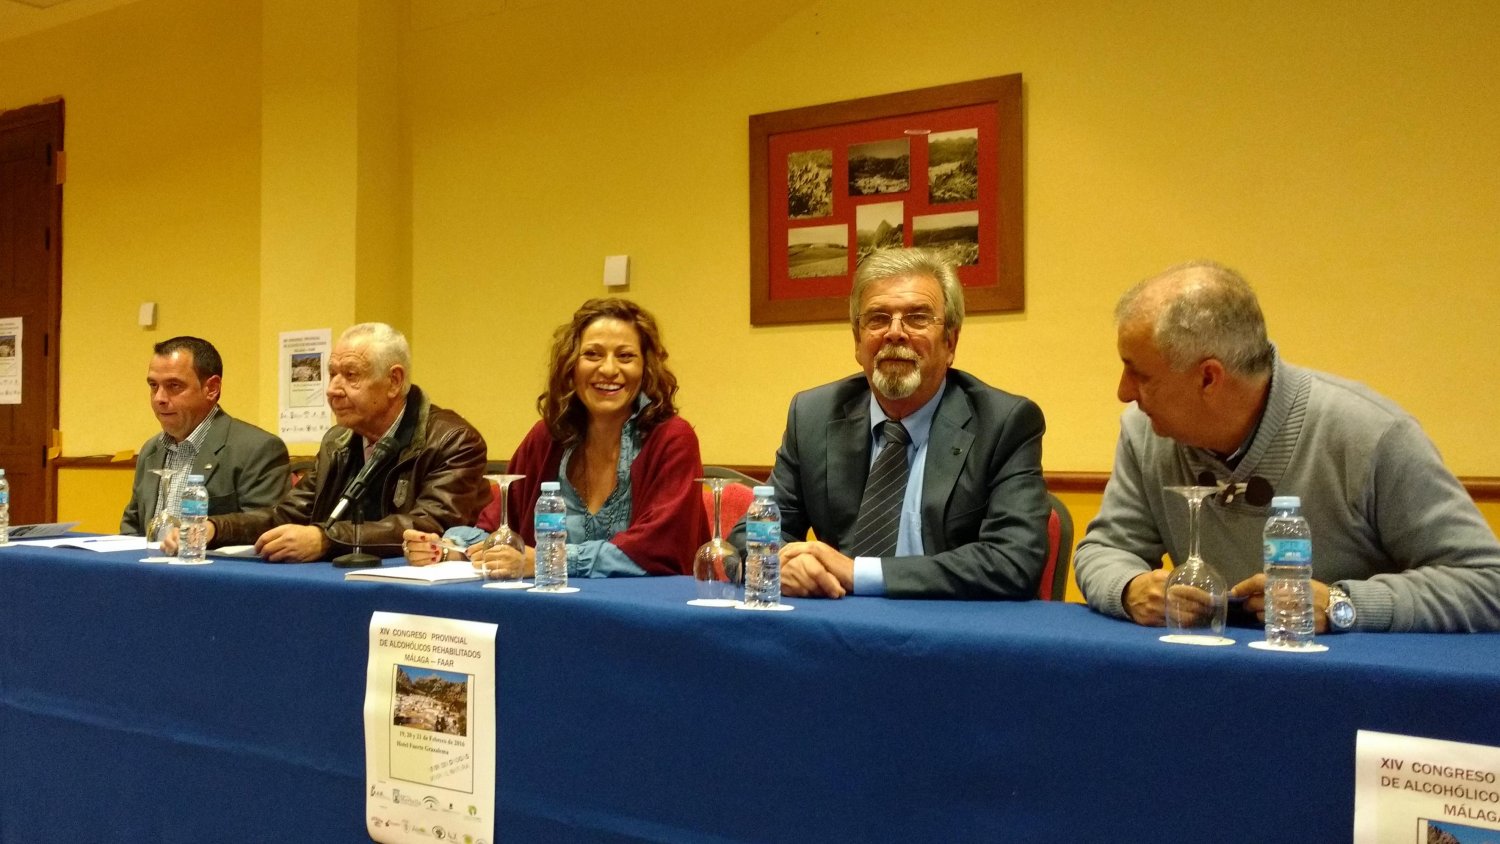 Marbella colabora con el XIV Congreso Provincial de Alcohólicos Rehabilitados